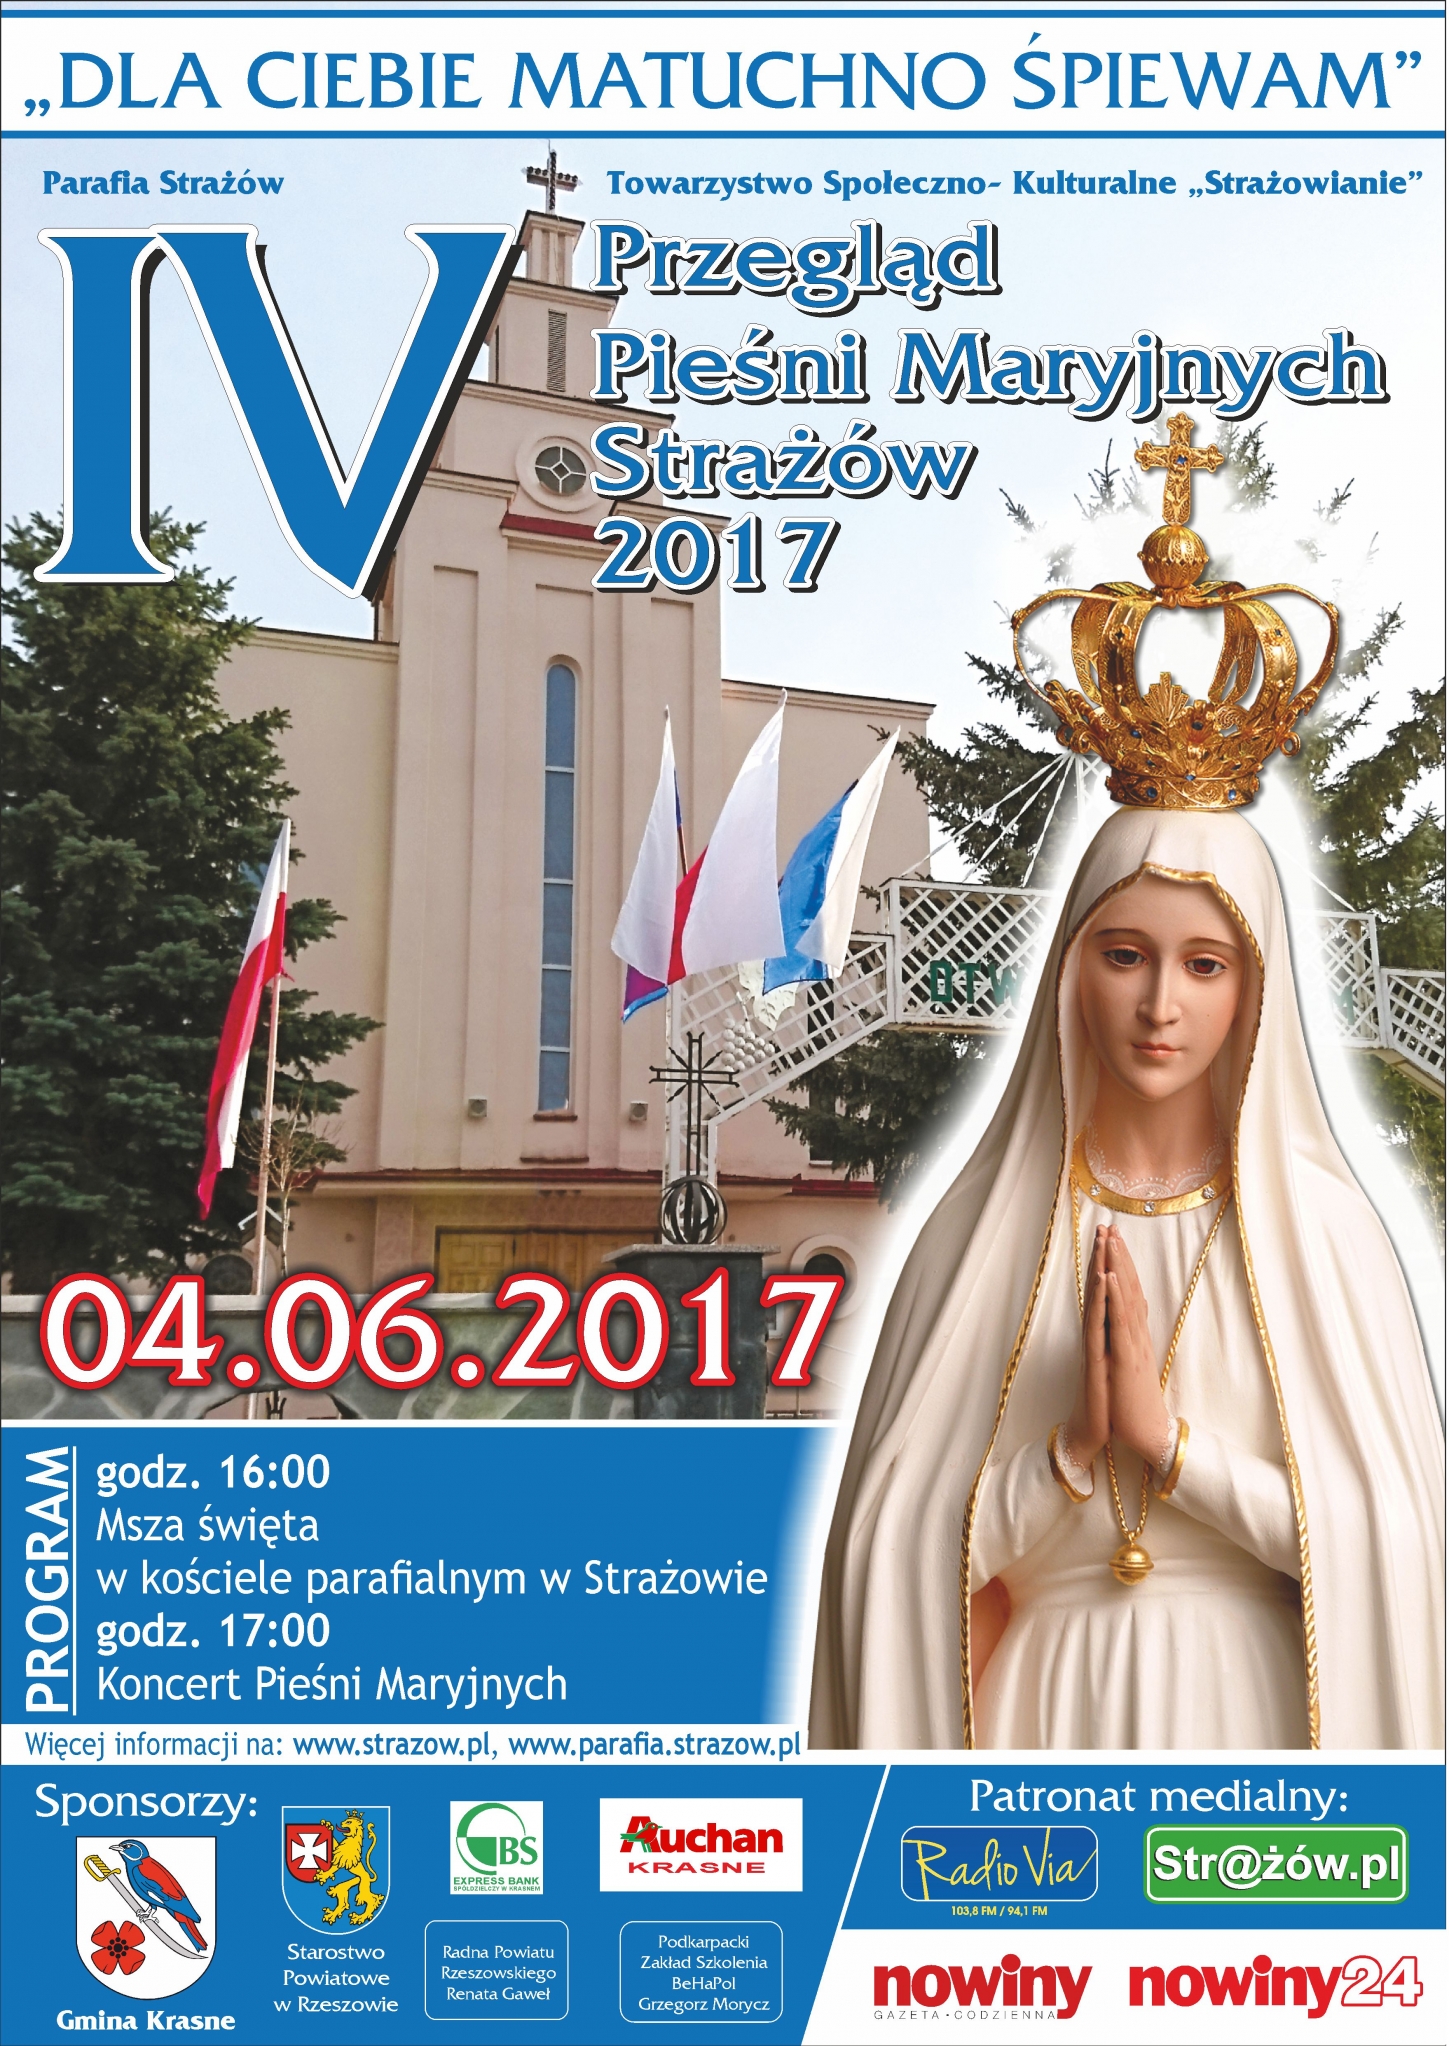 https://powiat.rzeszowski.pl/blog/2017/05/30/iv-przeglad-piesni-maryjnych-strazow-2017-dla-ciebie-matuchno-spiewam/plakat-iv-przeglad-piesni-maryjnych-strazow2017-jpg/